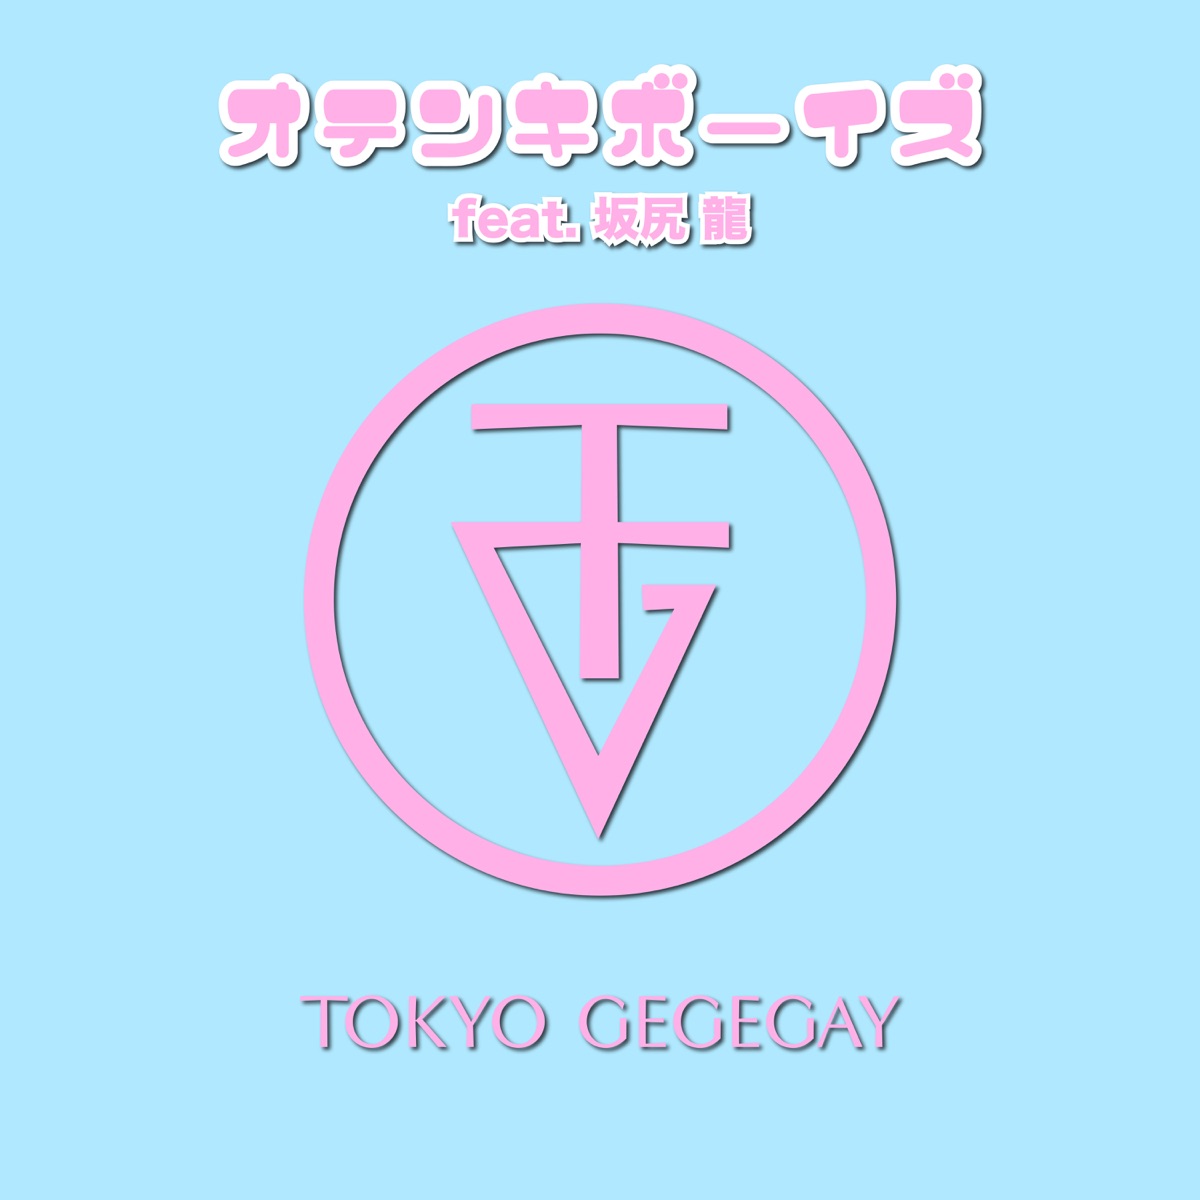 『東京ゲゲゲイ - オテンキボーイズ (feat. 坂尻龍)』収録の『オテンキボーイズ (feat. 坂尻龍)』ジャケット